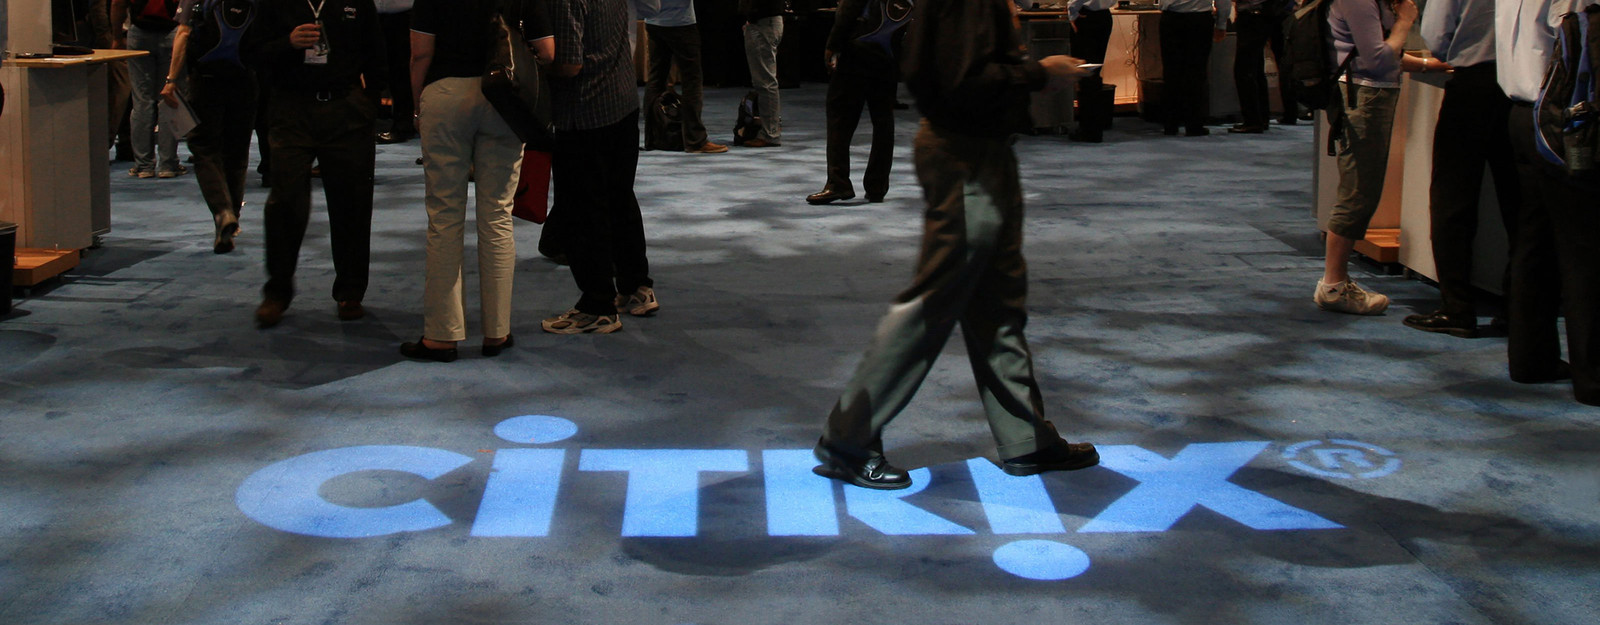 Citrix logo on the floor